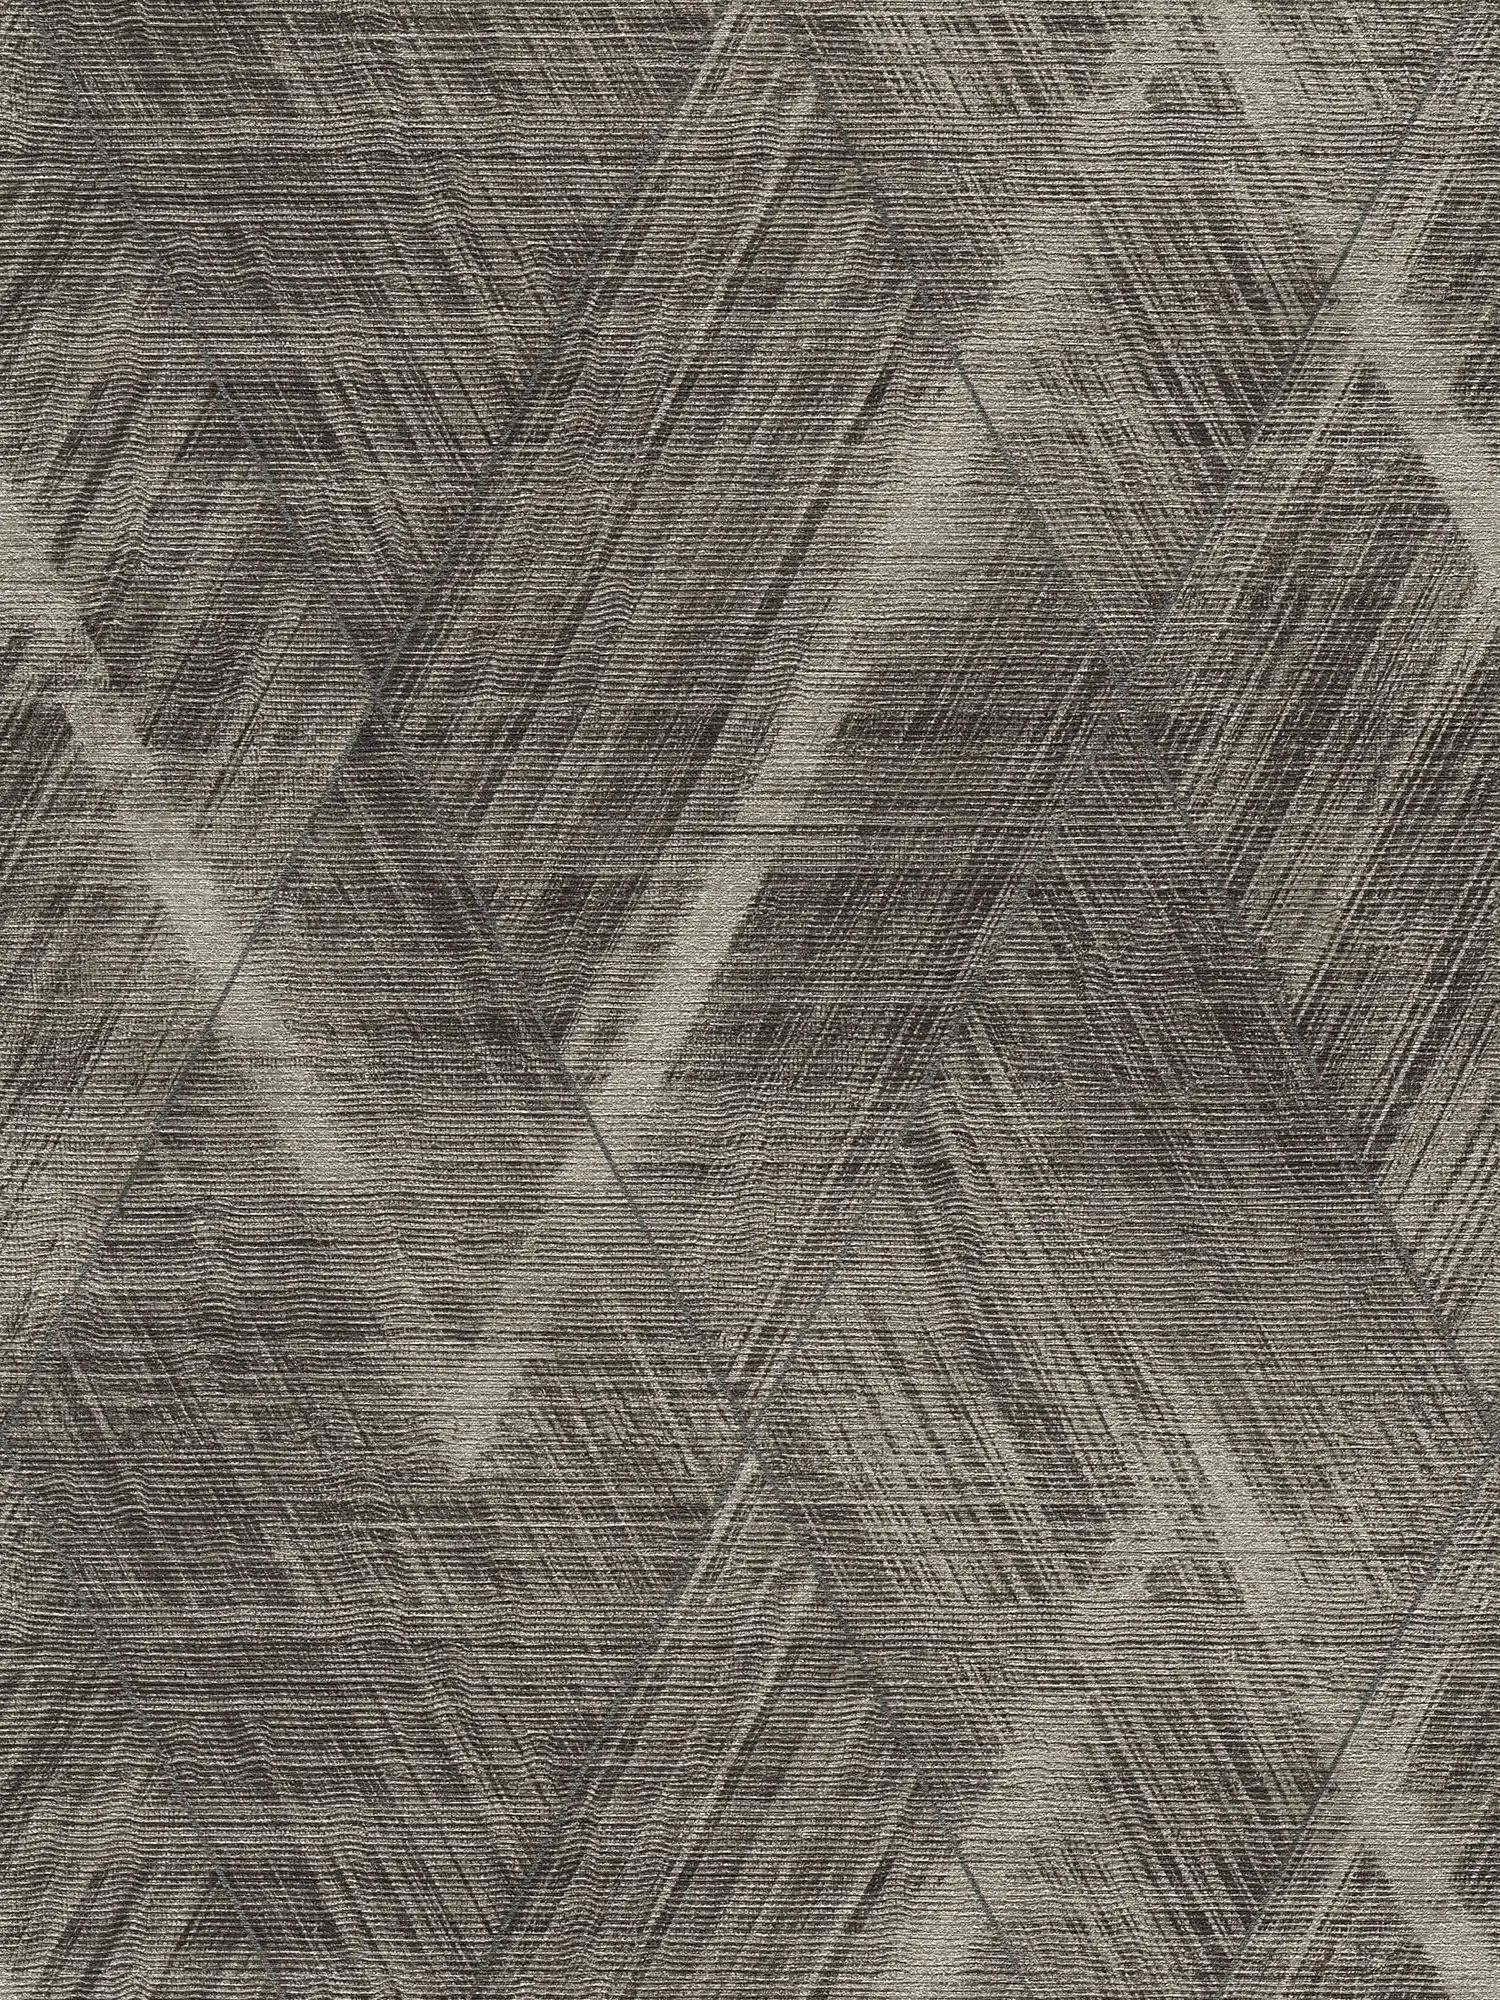         Papier peint aspect textile avec motif losange - métallique, gris
    